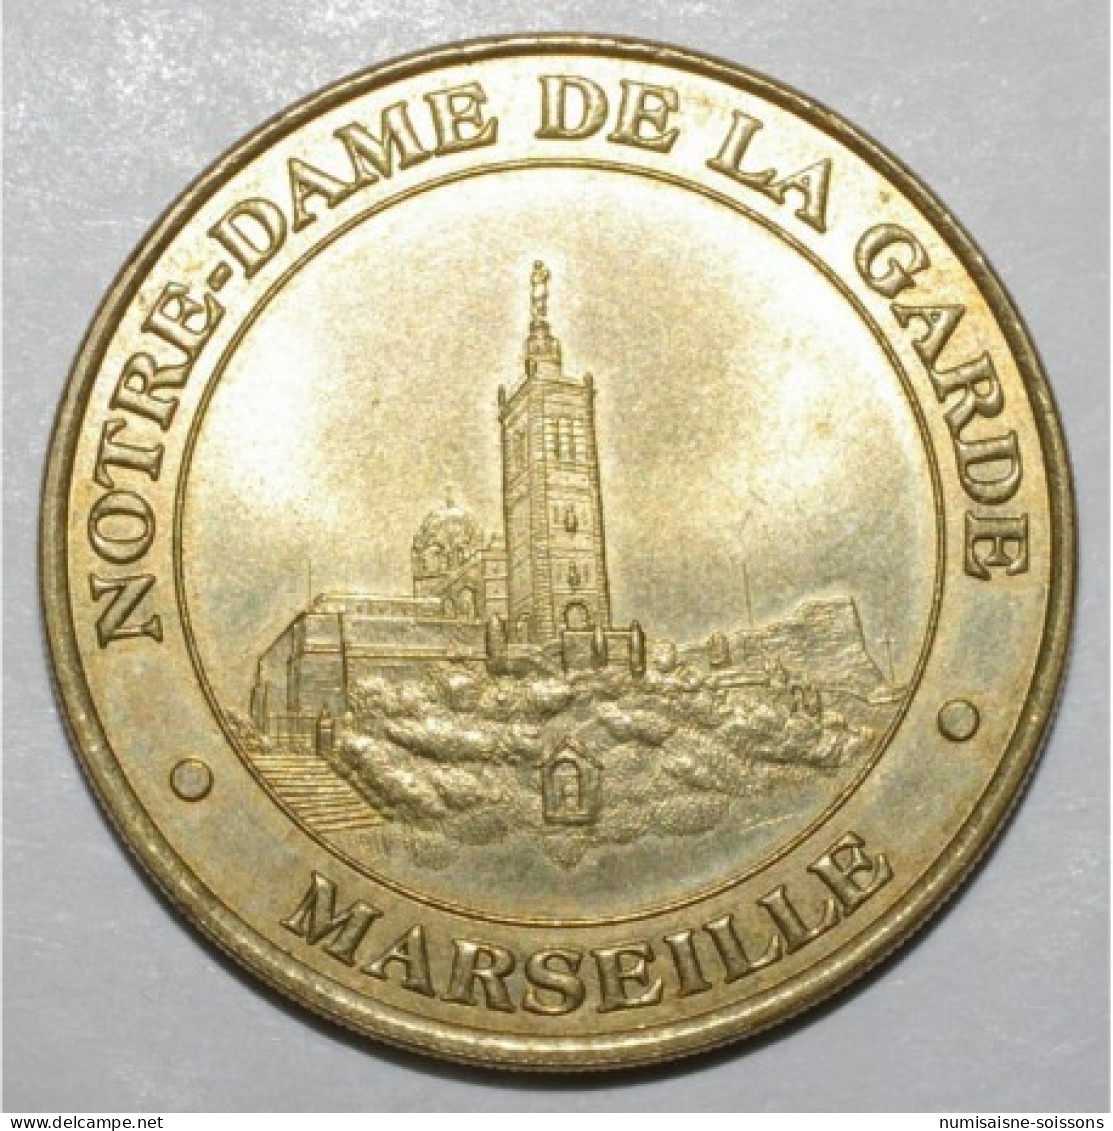 13 - MARSEILLE - NOTRE DAME DE LA GARDE - MDP 1998 - Non-datés